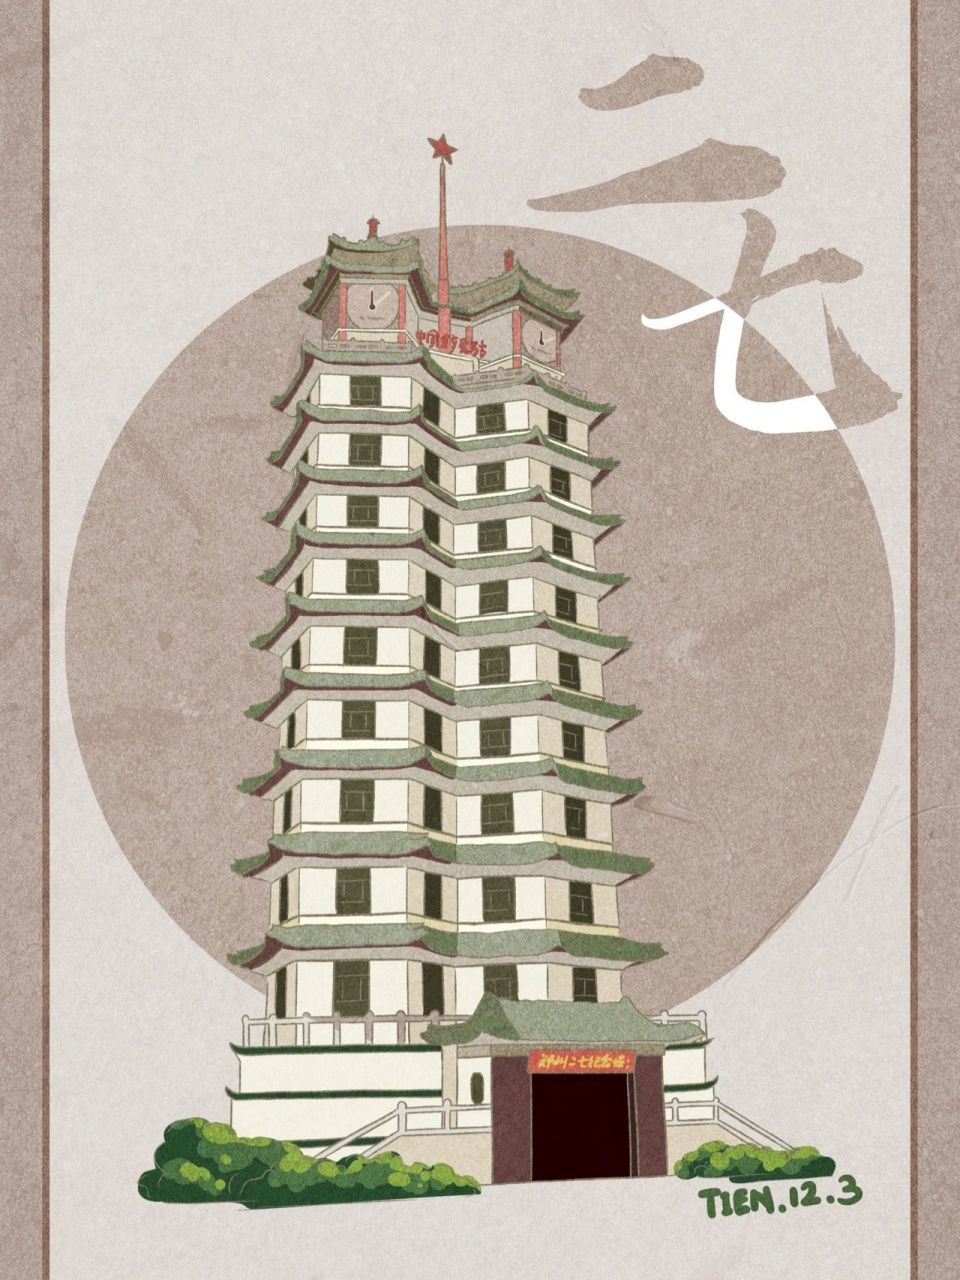 河南城市插画系列 郑州二七塔 最近画的河南城市插画中的一个部分